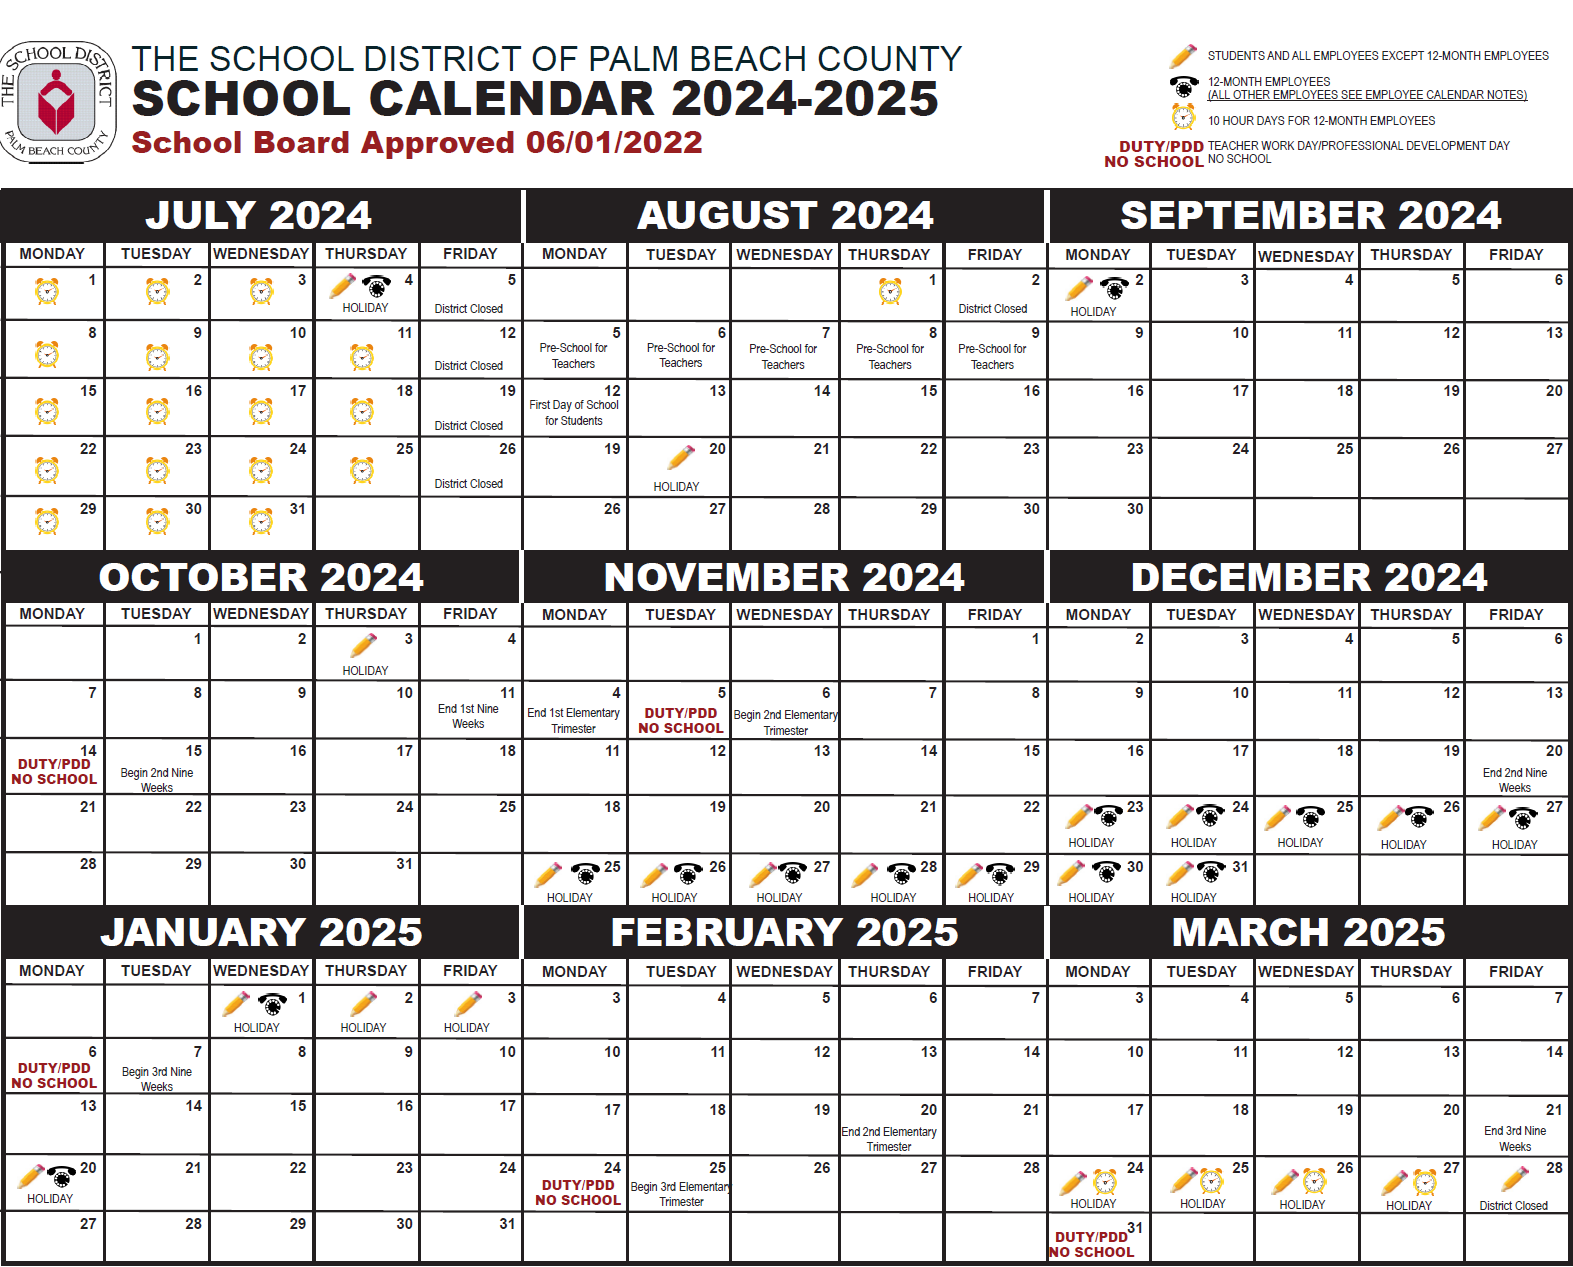 Palm Beach County School Calendar 2024-2025 July through March